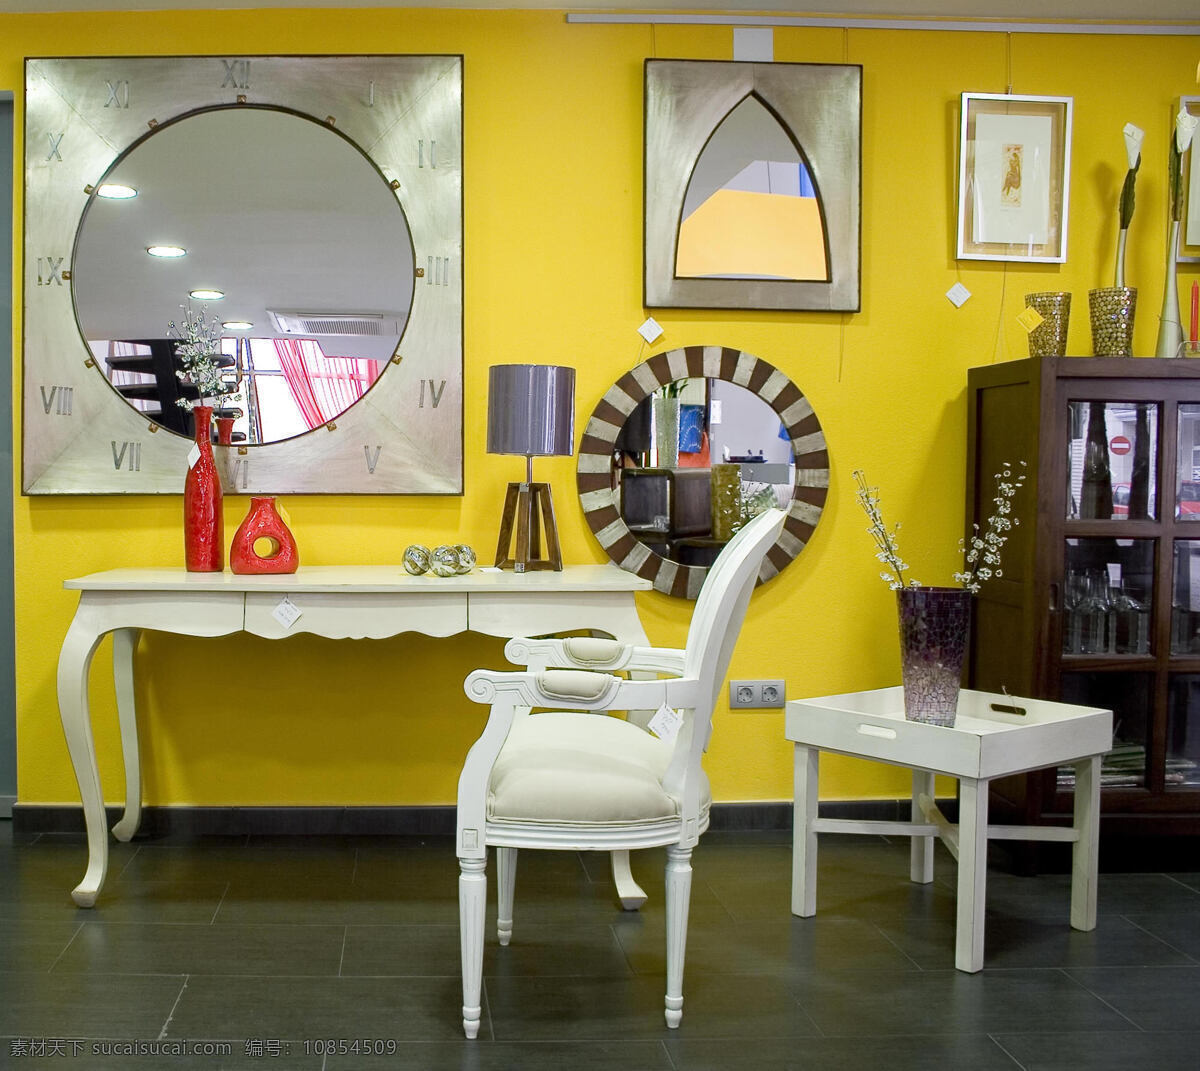 黄色 梳妆台 效果图 室内 装修 装饰素材 室内设计